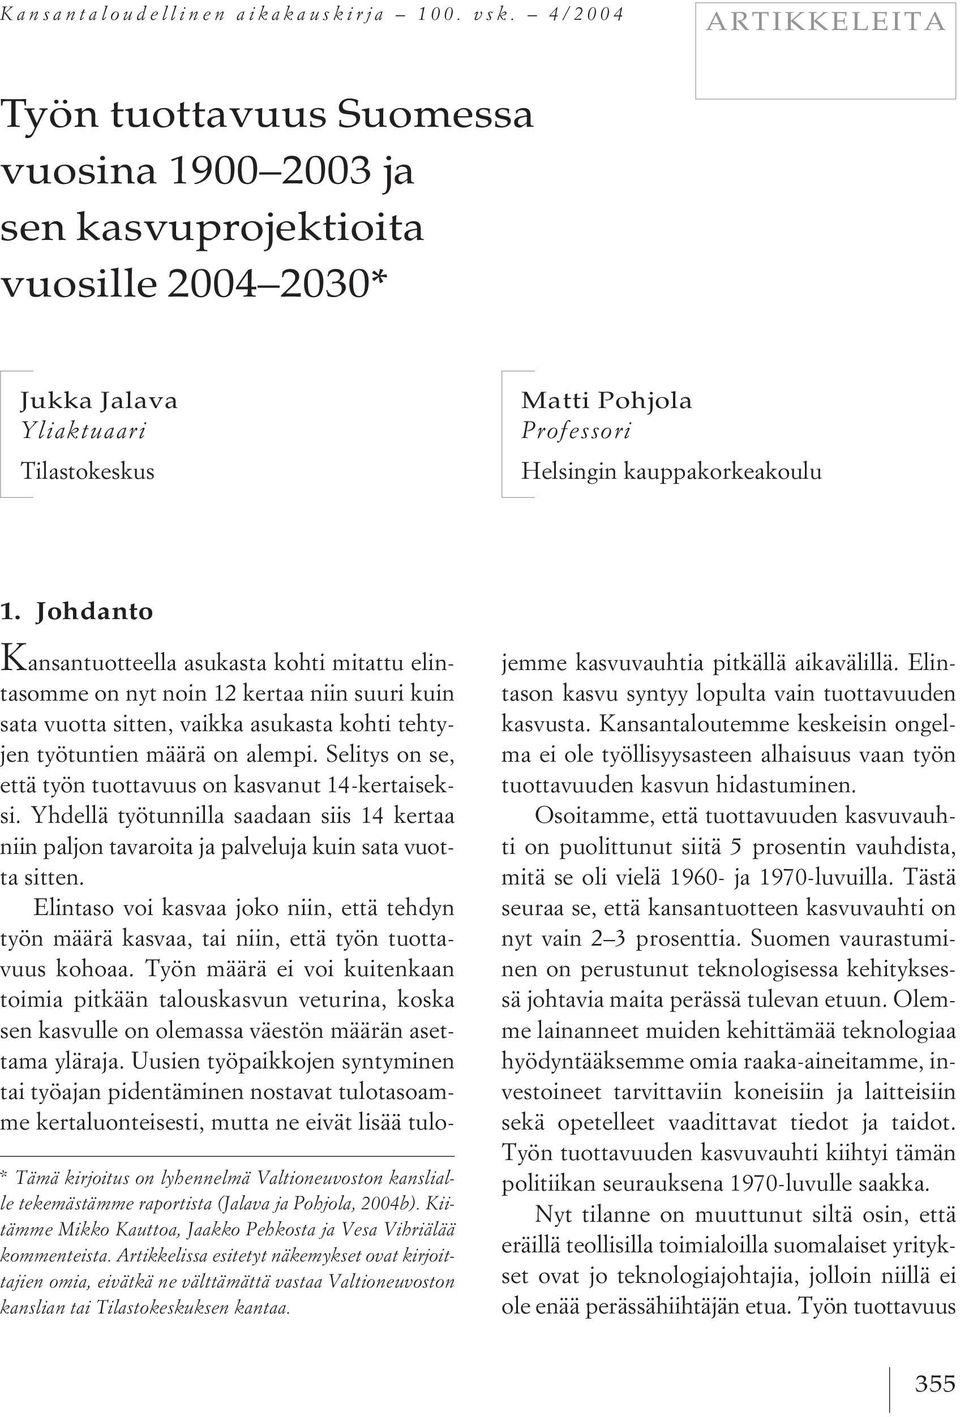 * Tämä kirjoitus on lyhennelmä Valtioneuvoston kanslialle tekemästämme raportista (Jalava ja Pohjola, 2004b). Kiitämme Mikko Kauttoa, Jaakko Pehkosta ja Vesa Vihriälää kommenteista.